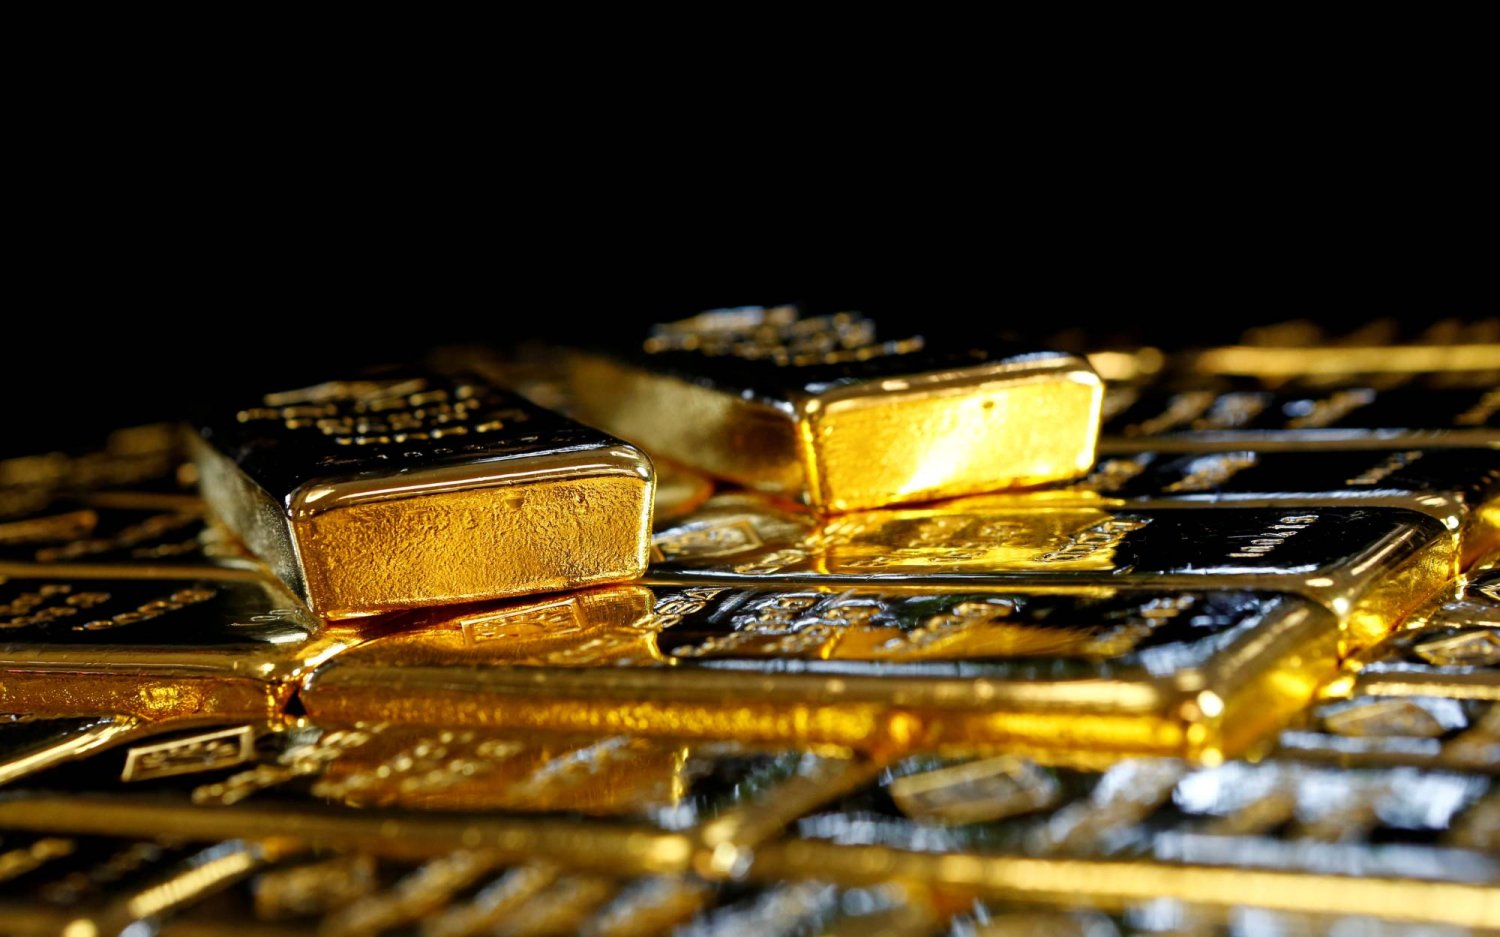 سبائك ذهبية في مصنع فصل الذهب والفضة النمساوي «أوغوسا» في فيينا النمسا (رويترز)